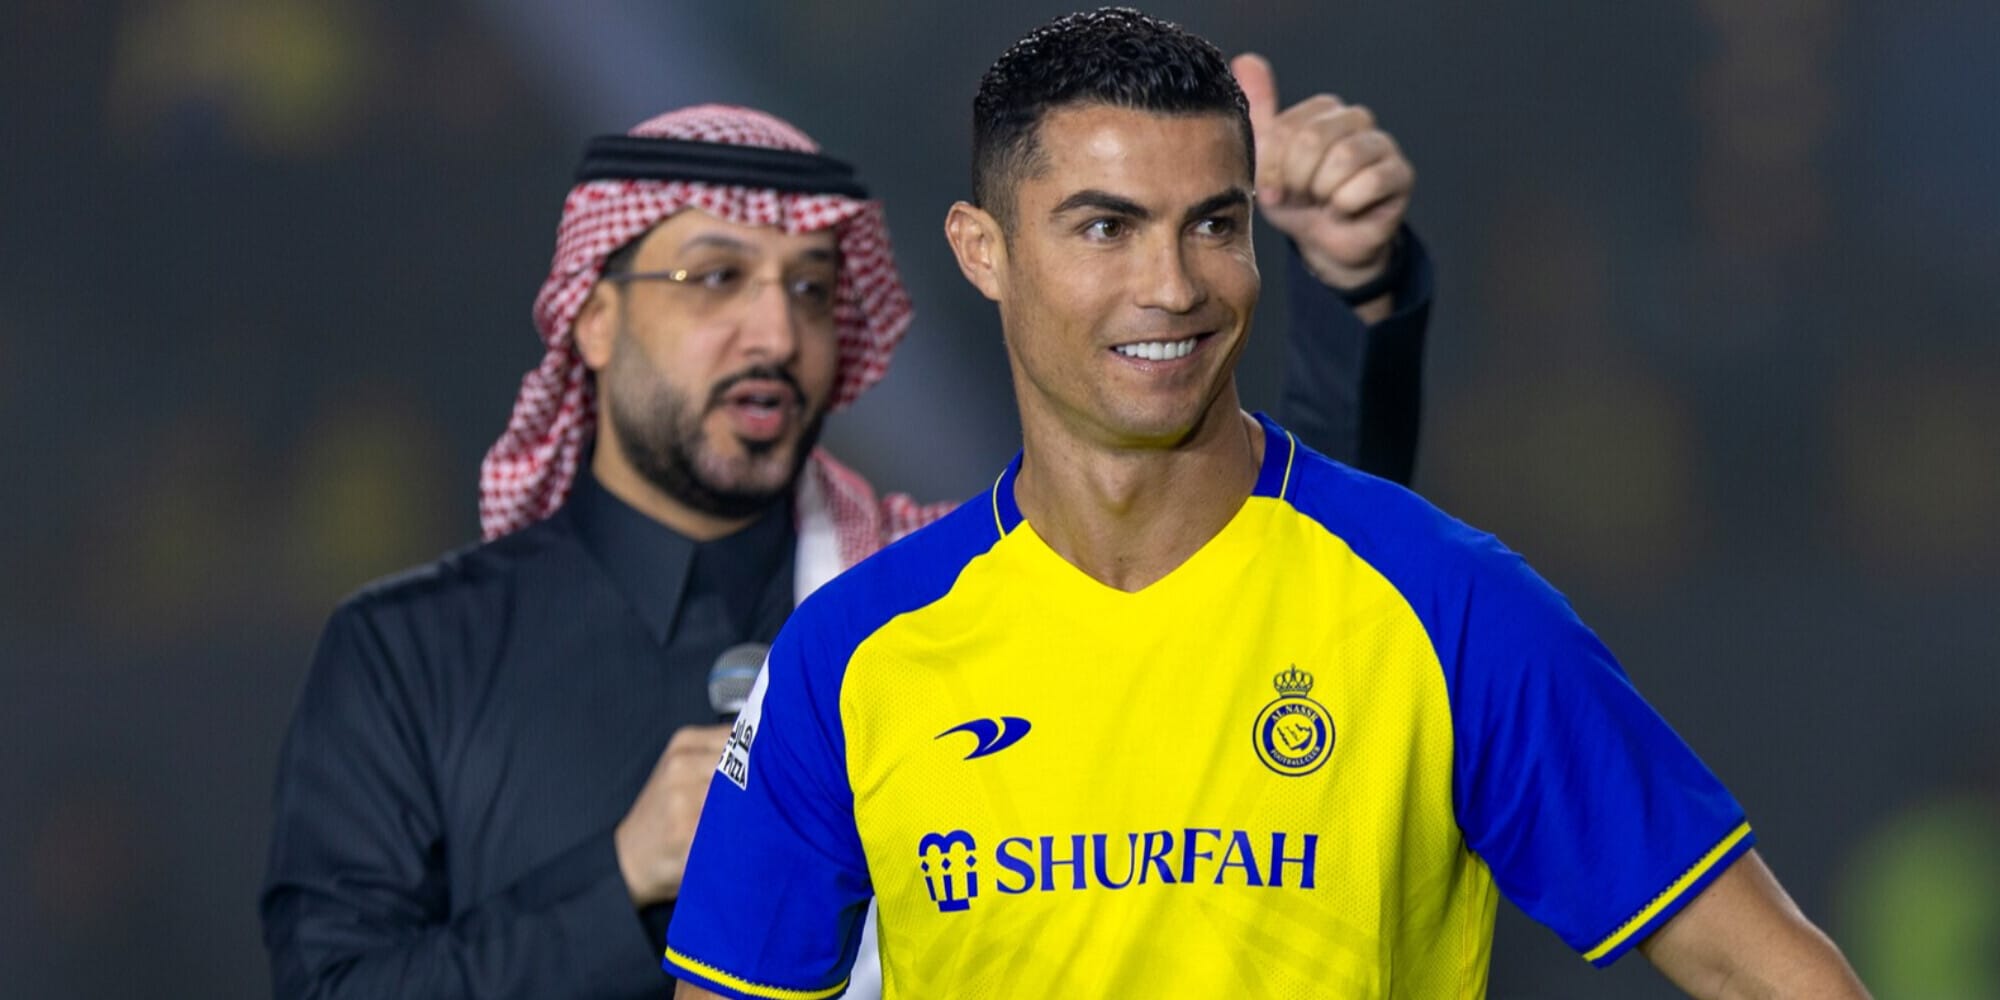 CdS – l’Al-Nassr non può tesserare Ronaldo. Il motivo da una soffiata anonima